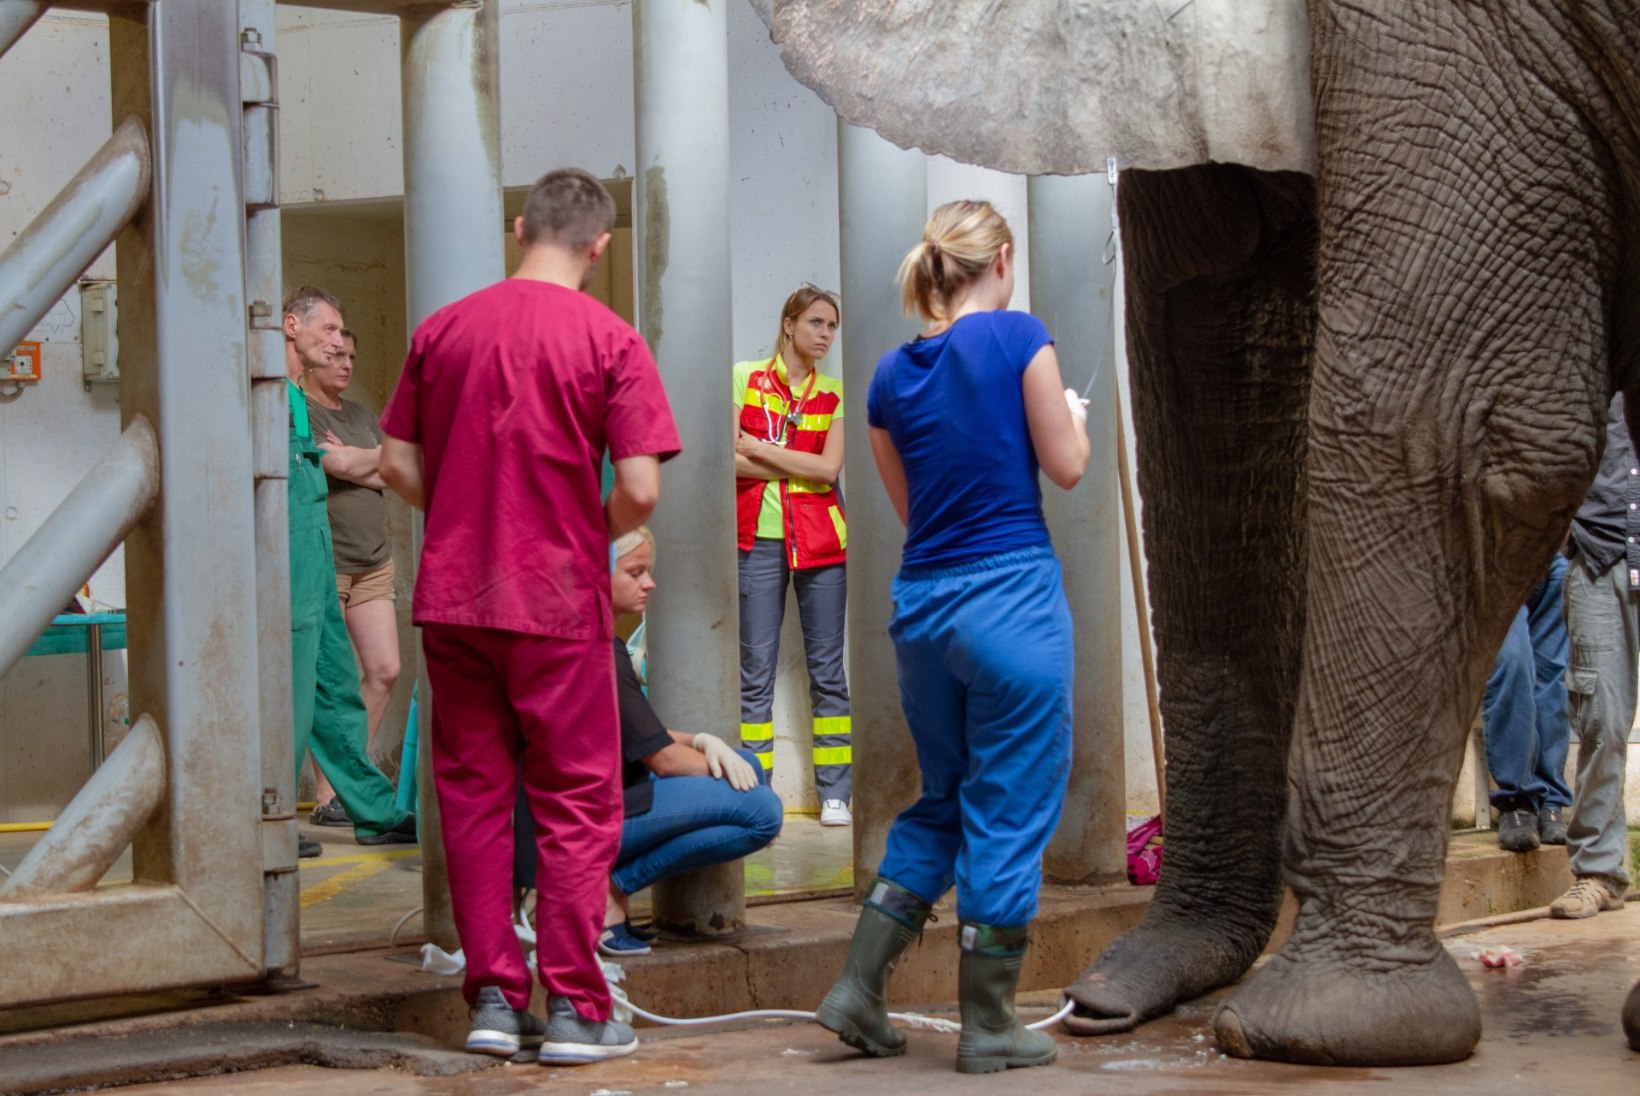 FOTOD | Tallinna loomaaia elevant Carli opereerimisel osales üle 60 inimese